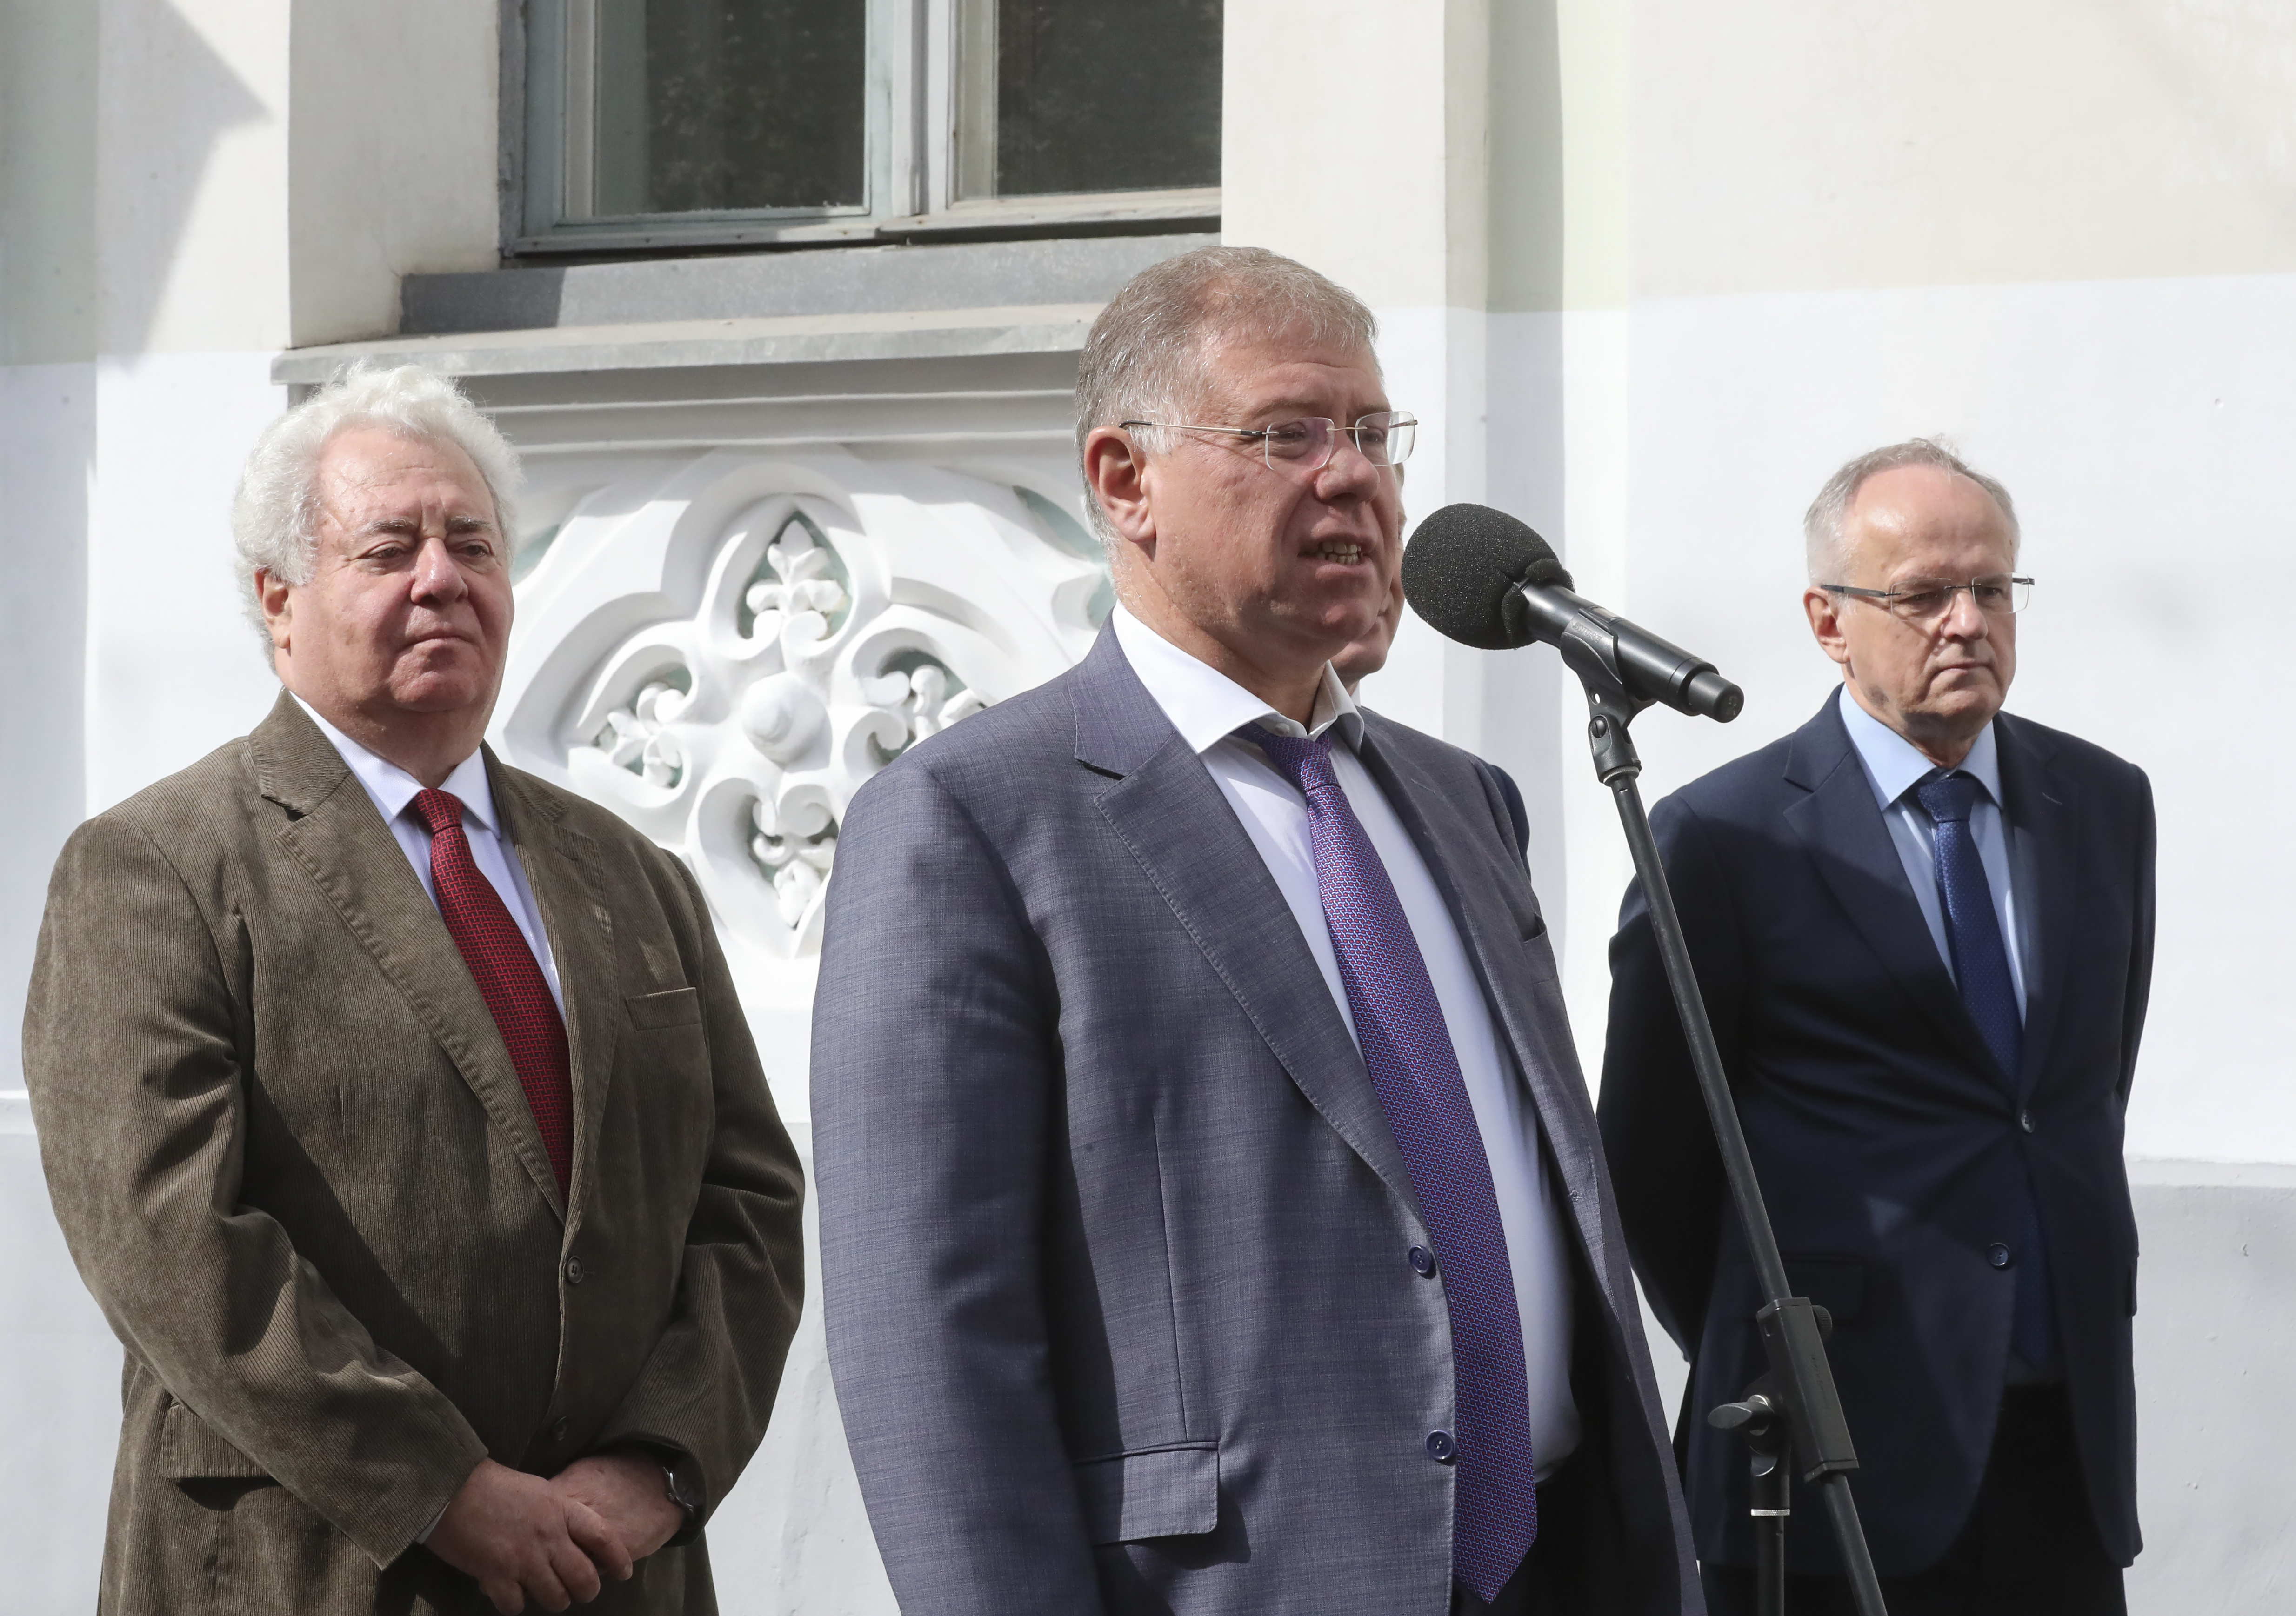 В Москве состоялось открытие мемориальной доски историку и педагогу С.О. Шмидту